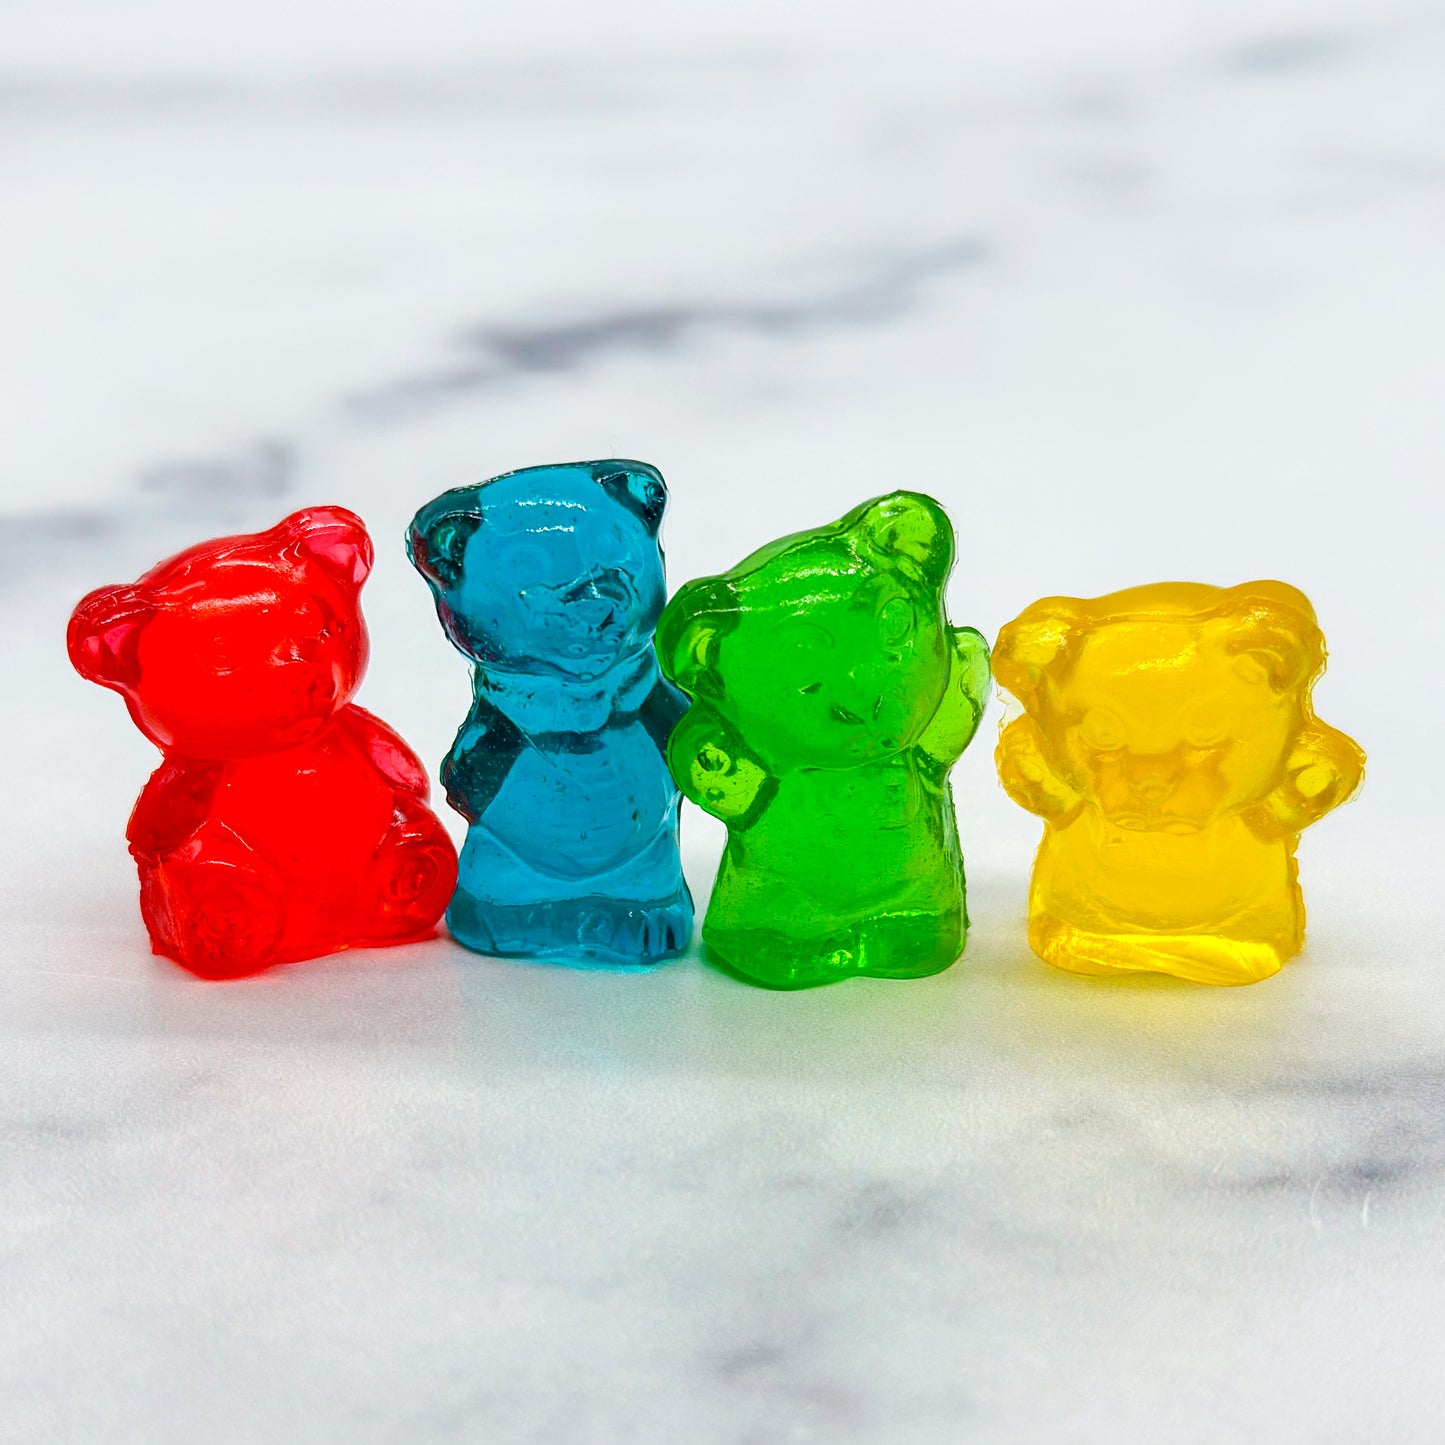 Gummi Chubby Bears